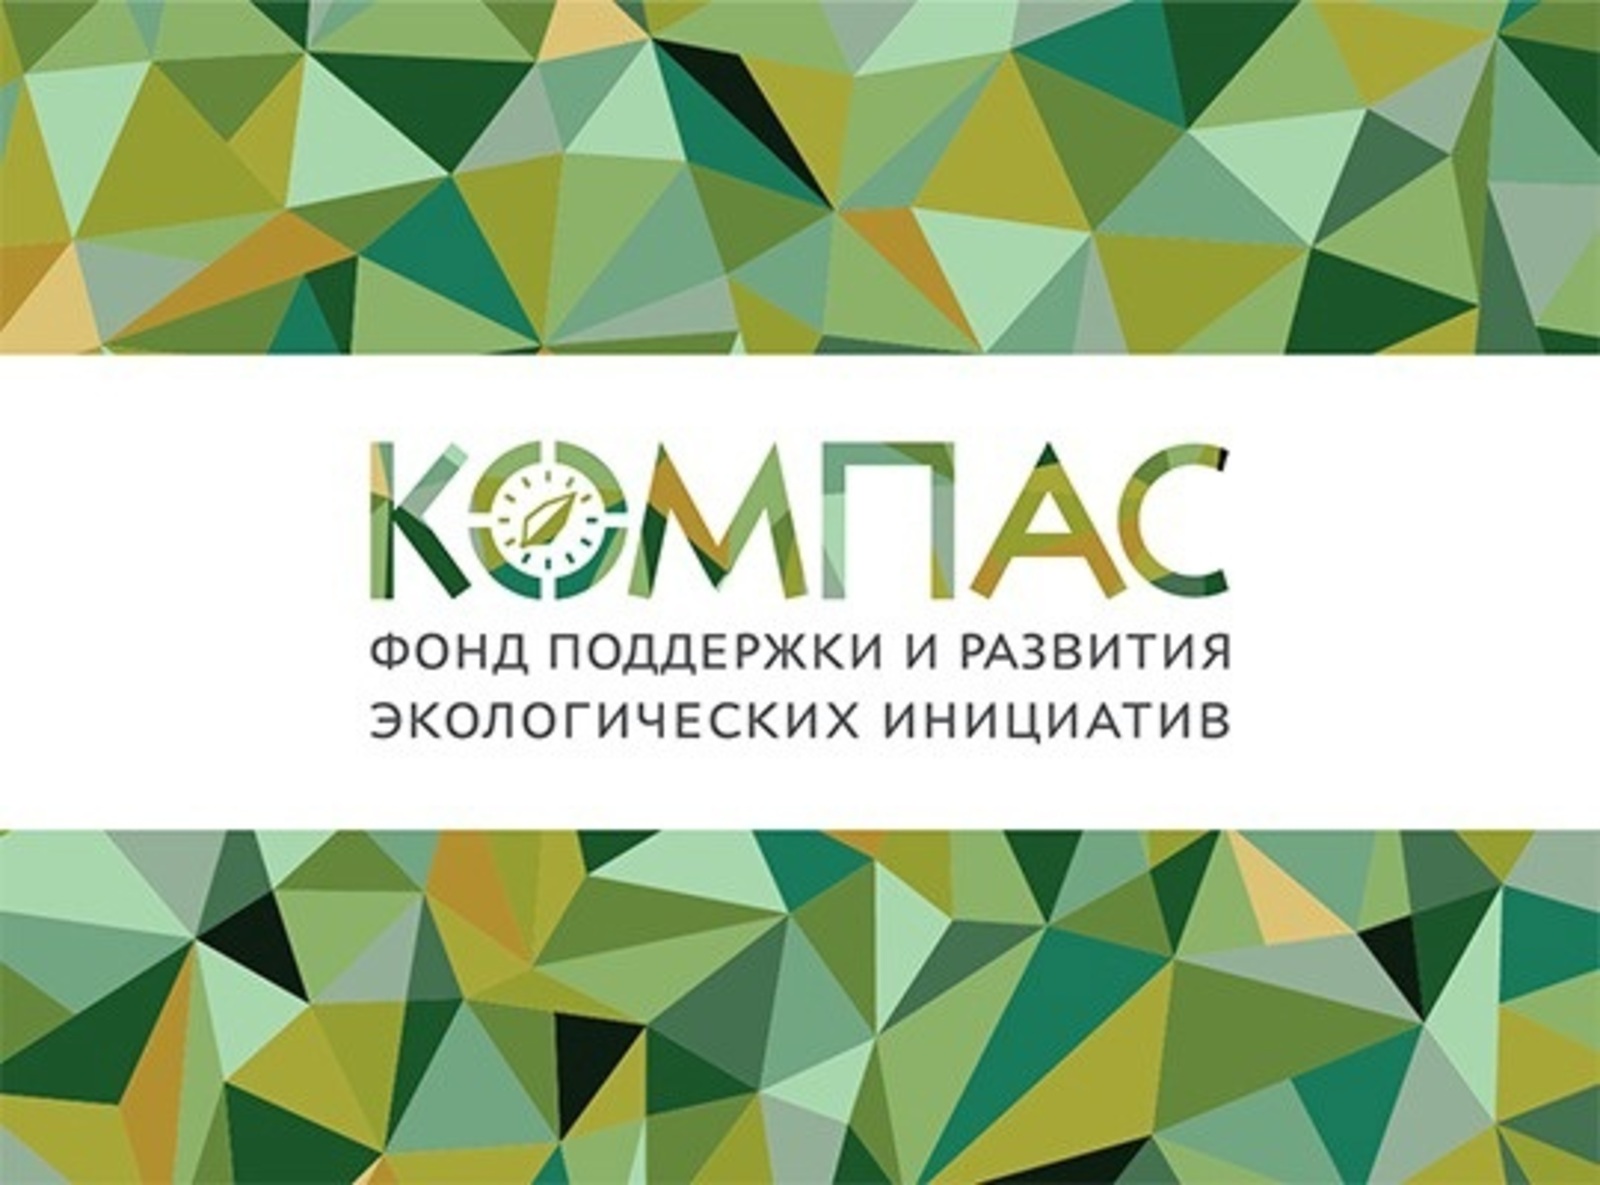 Развитию экологических инициатив в России поможет «Компас»